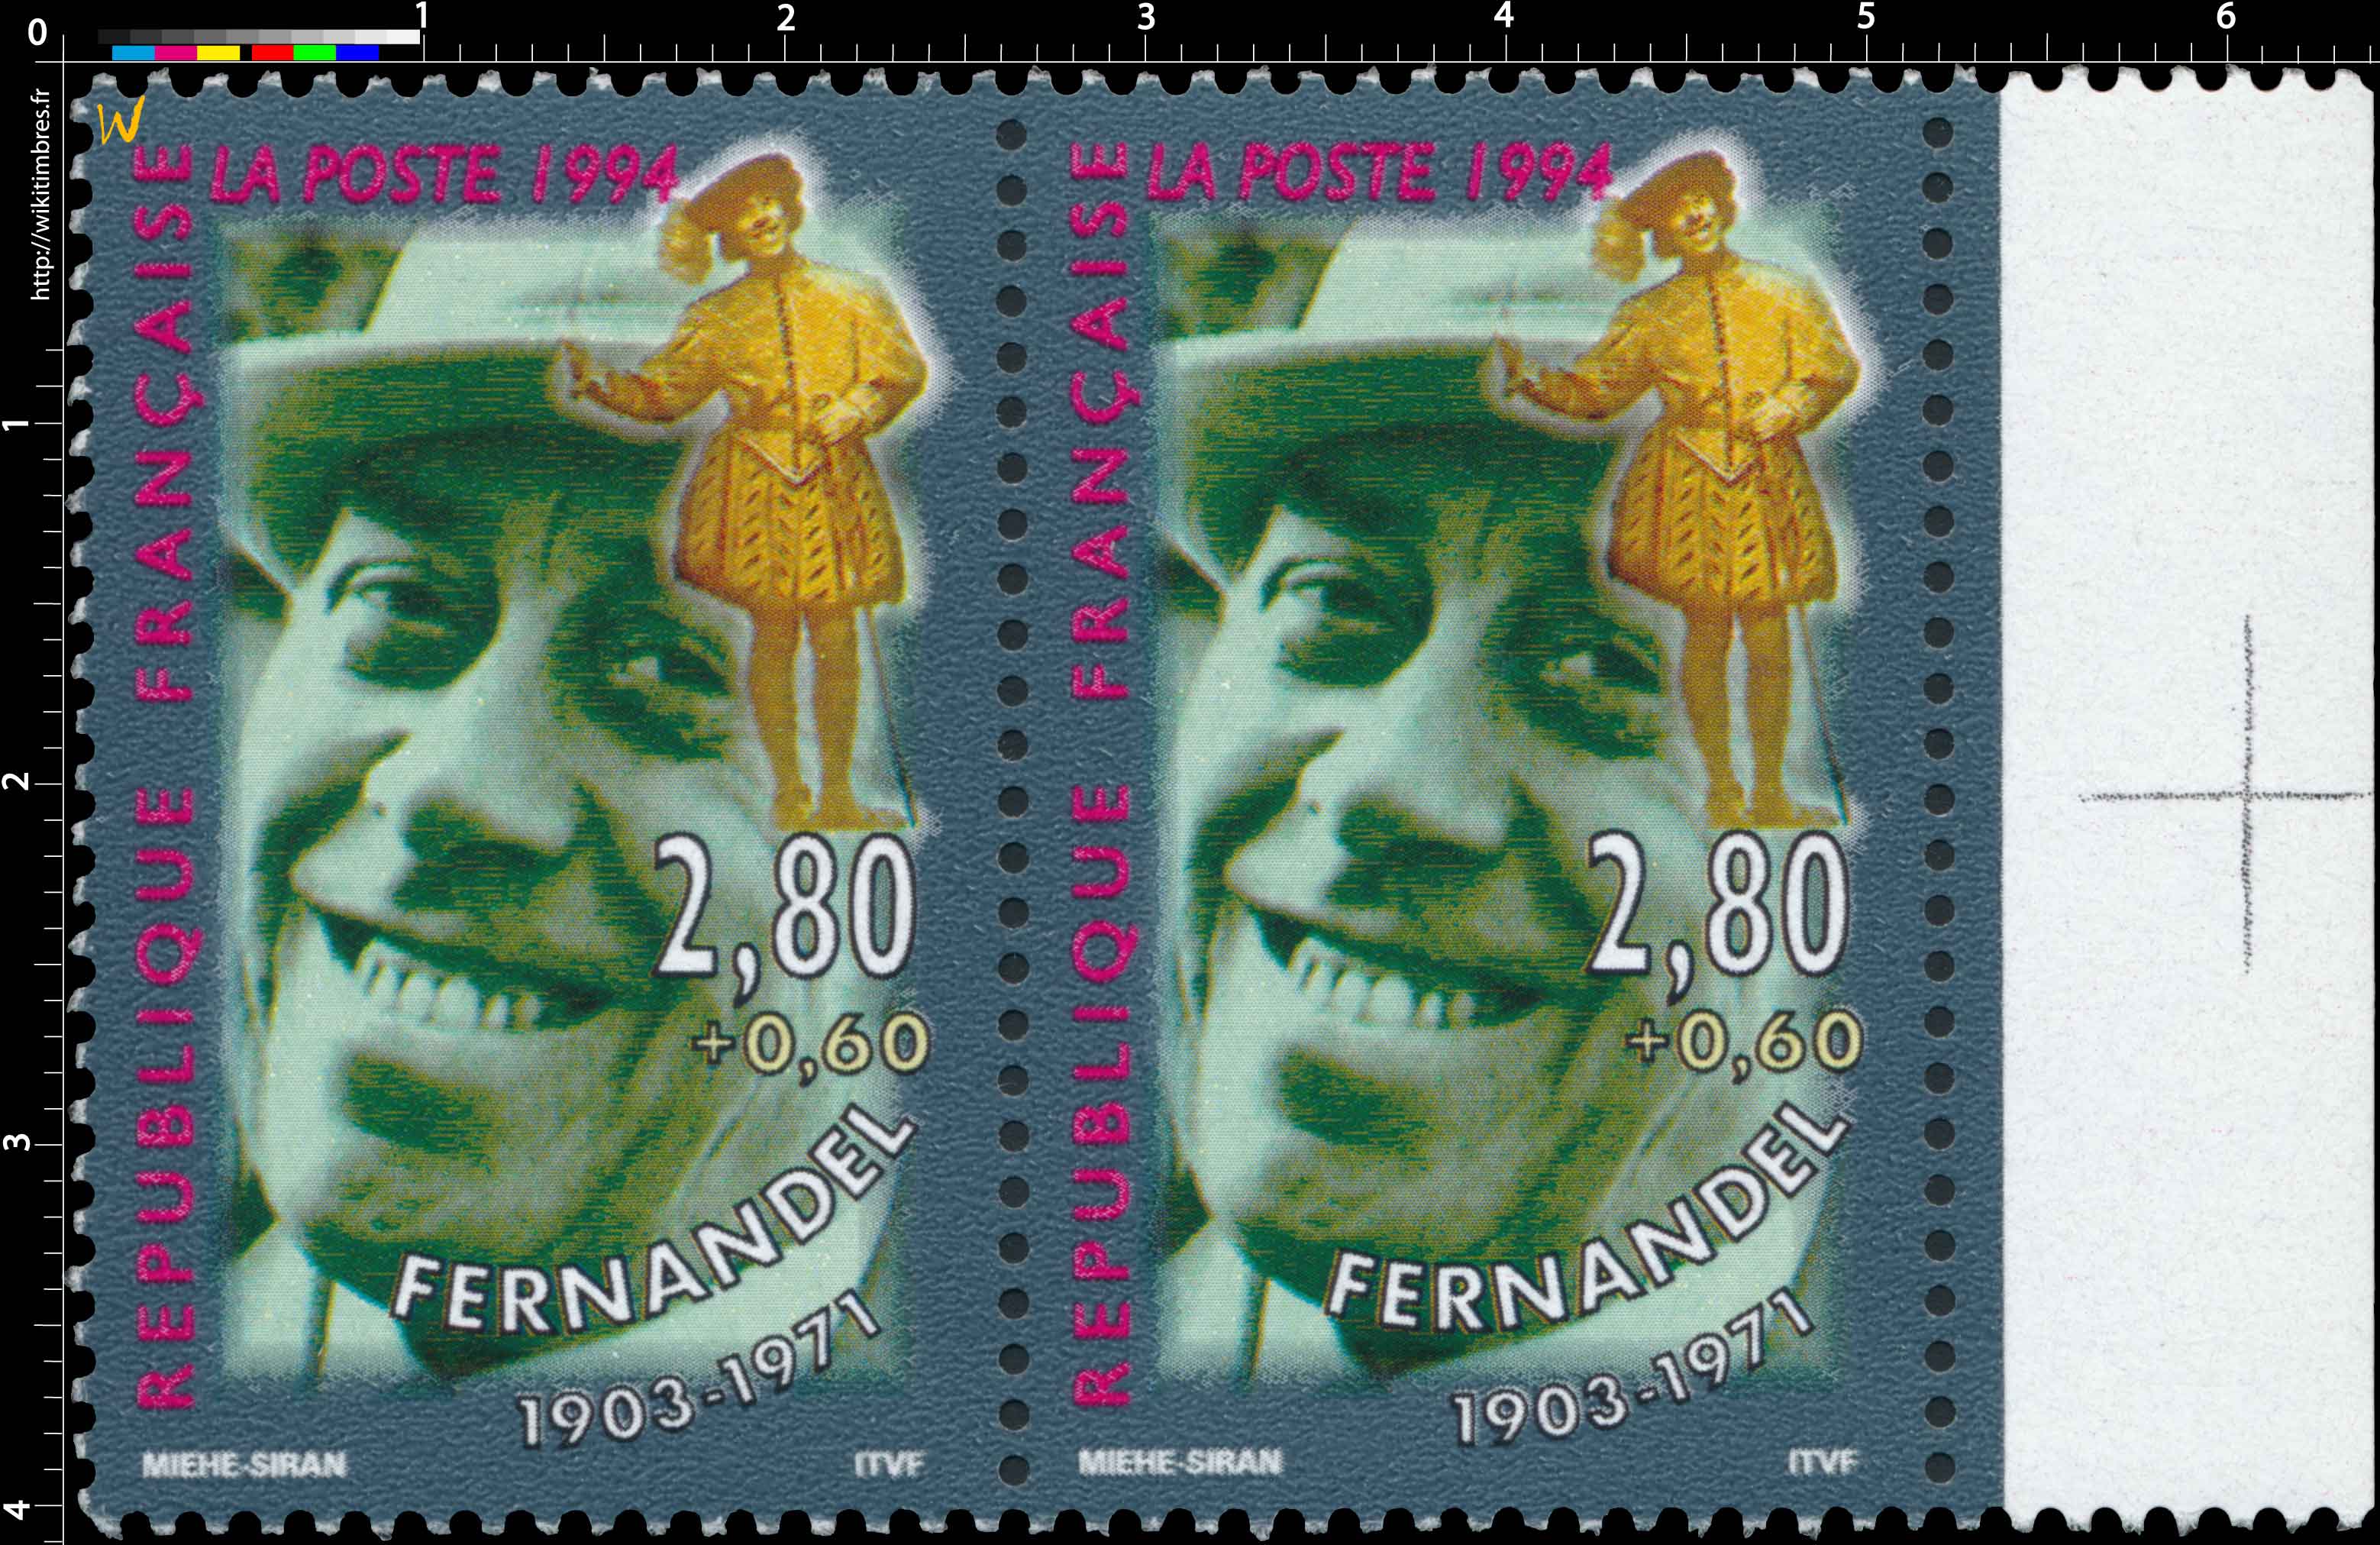 1994 FERNANDEL 1903-1971